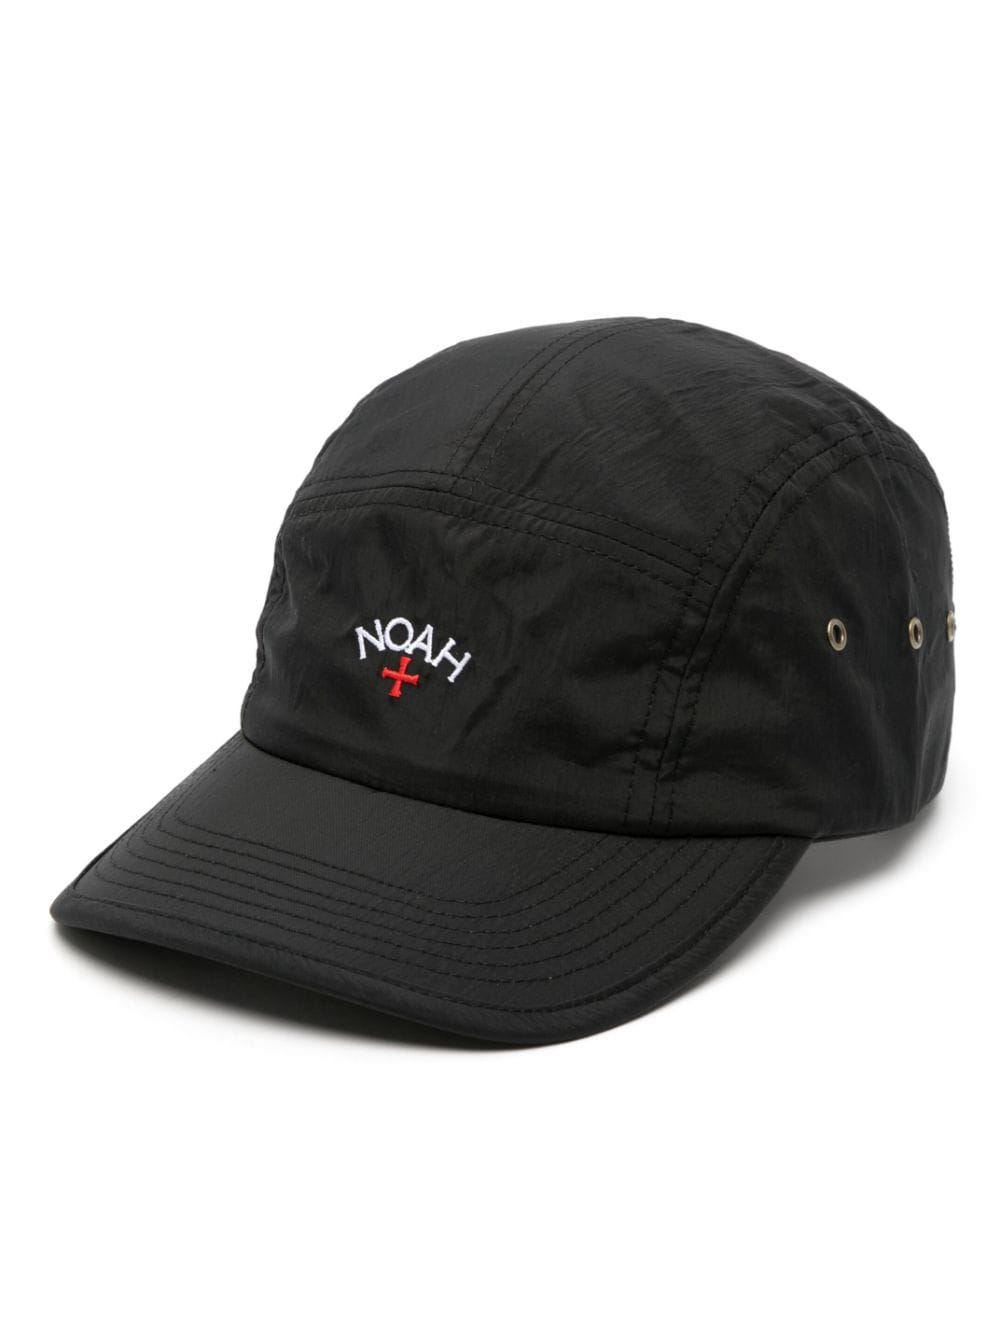 NOAH NY Hemingway logo-embroidered cap - Black von NOAH NY